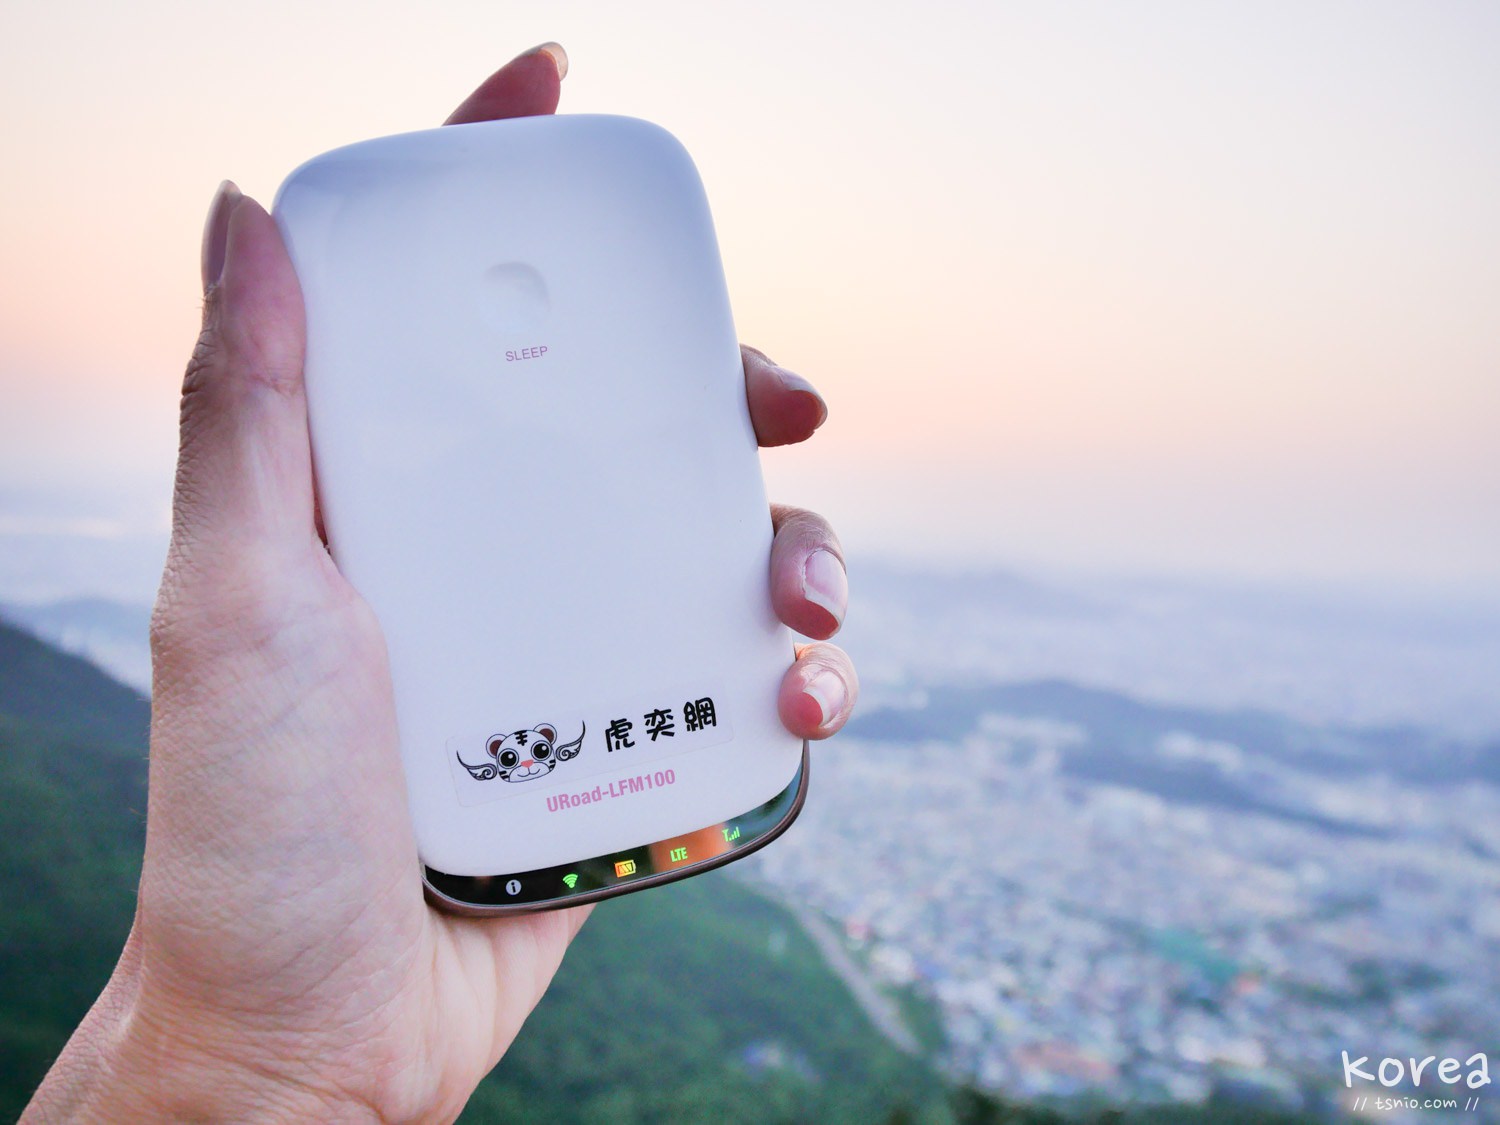 韓國wifi分享器推薦 虎奕網4G網路分享器 吃到飽不限速